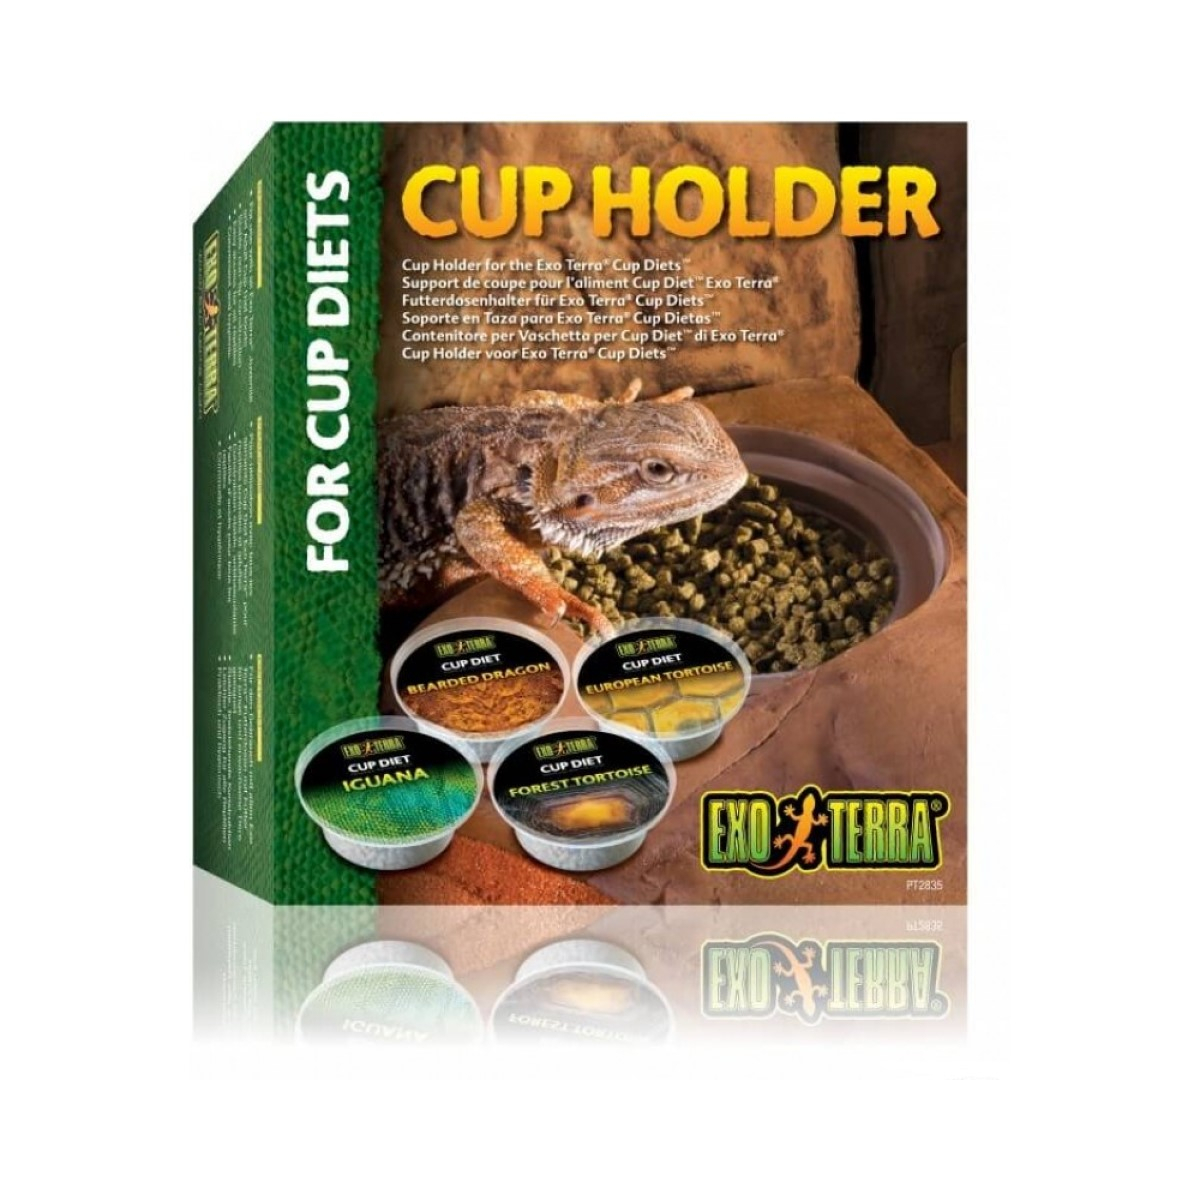 Cup Holder / Supporto di coppa per alimento Cup Diet Exo Terra